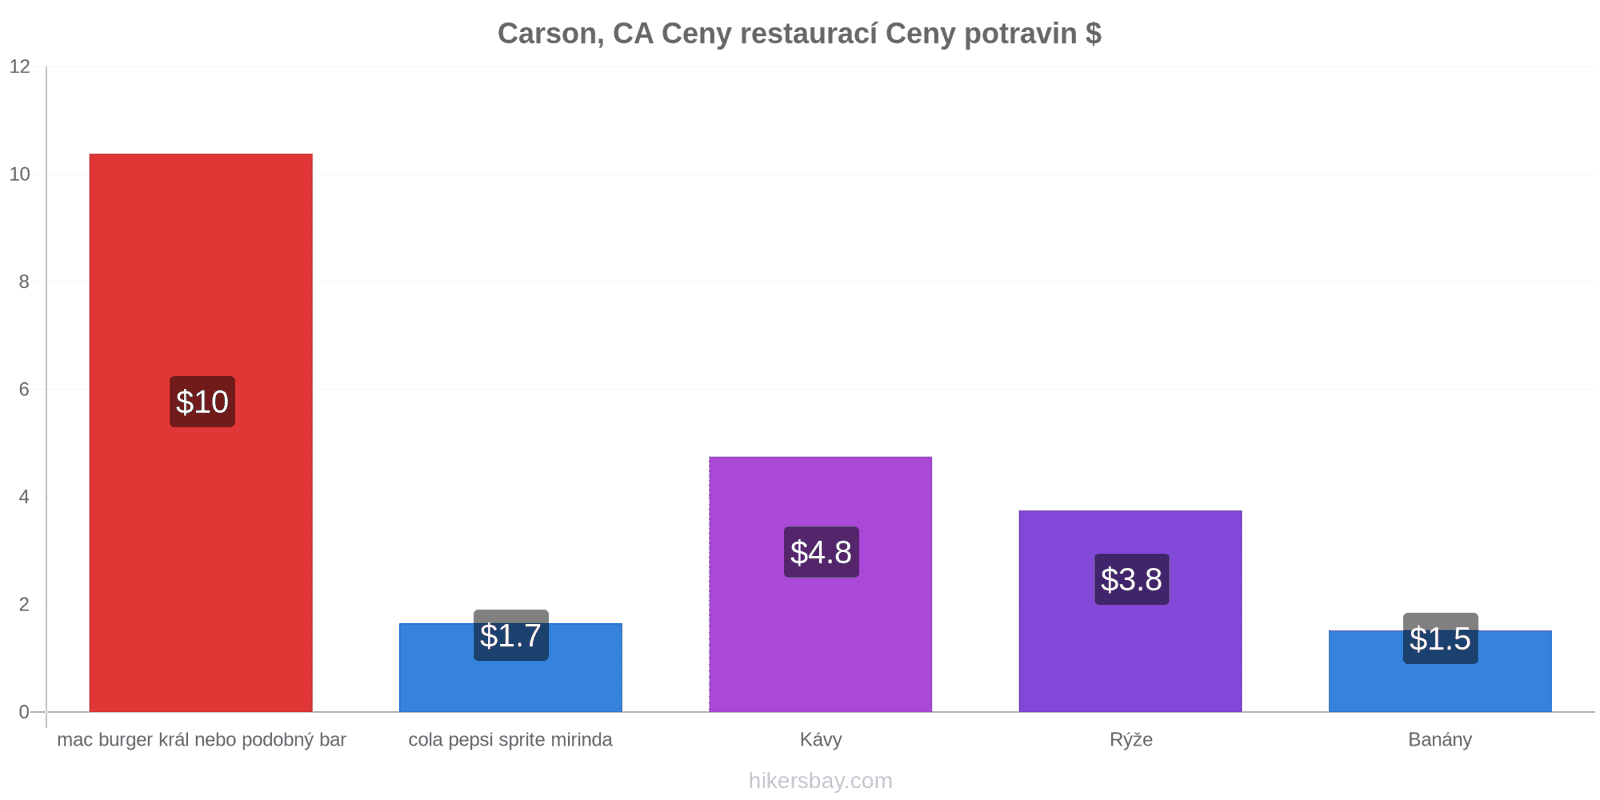 Carson, CA změny cen hikersbay.com